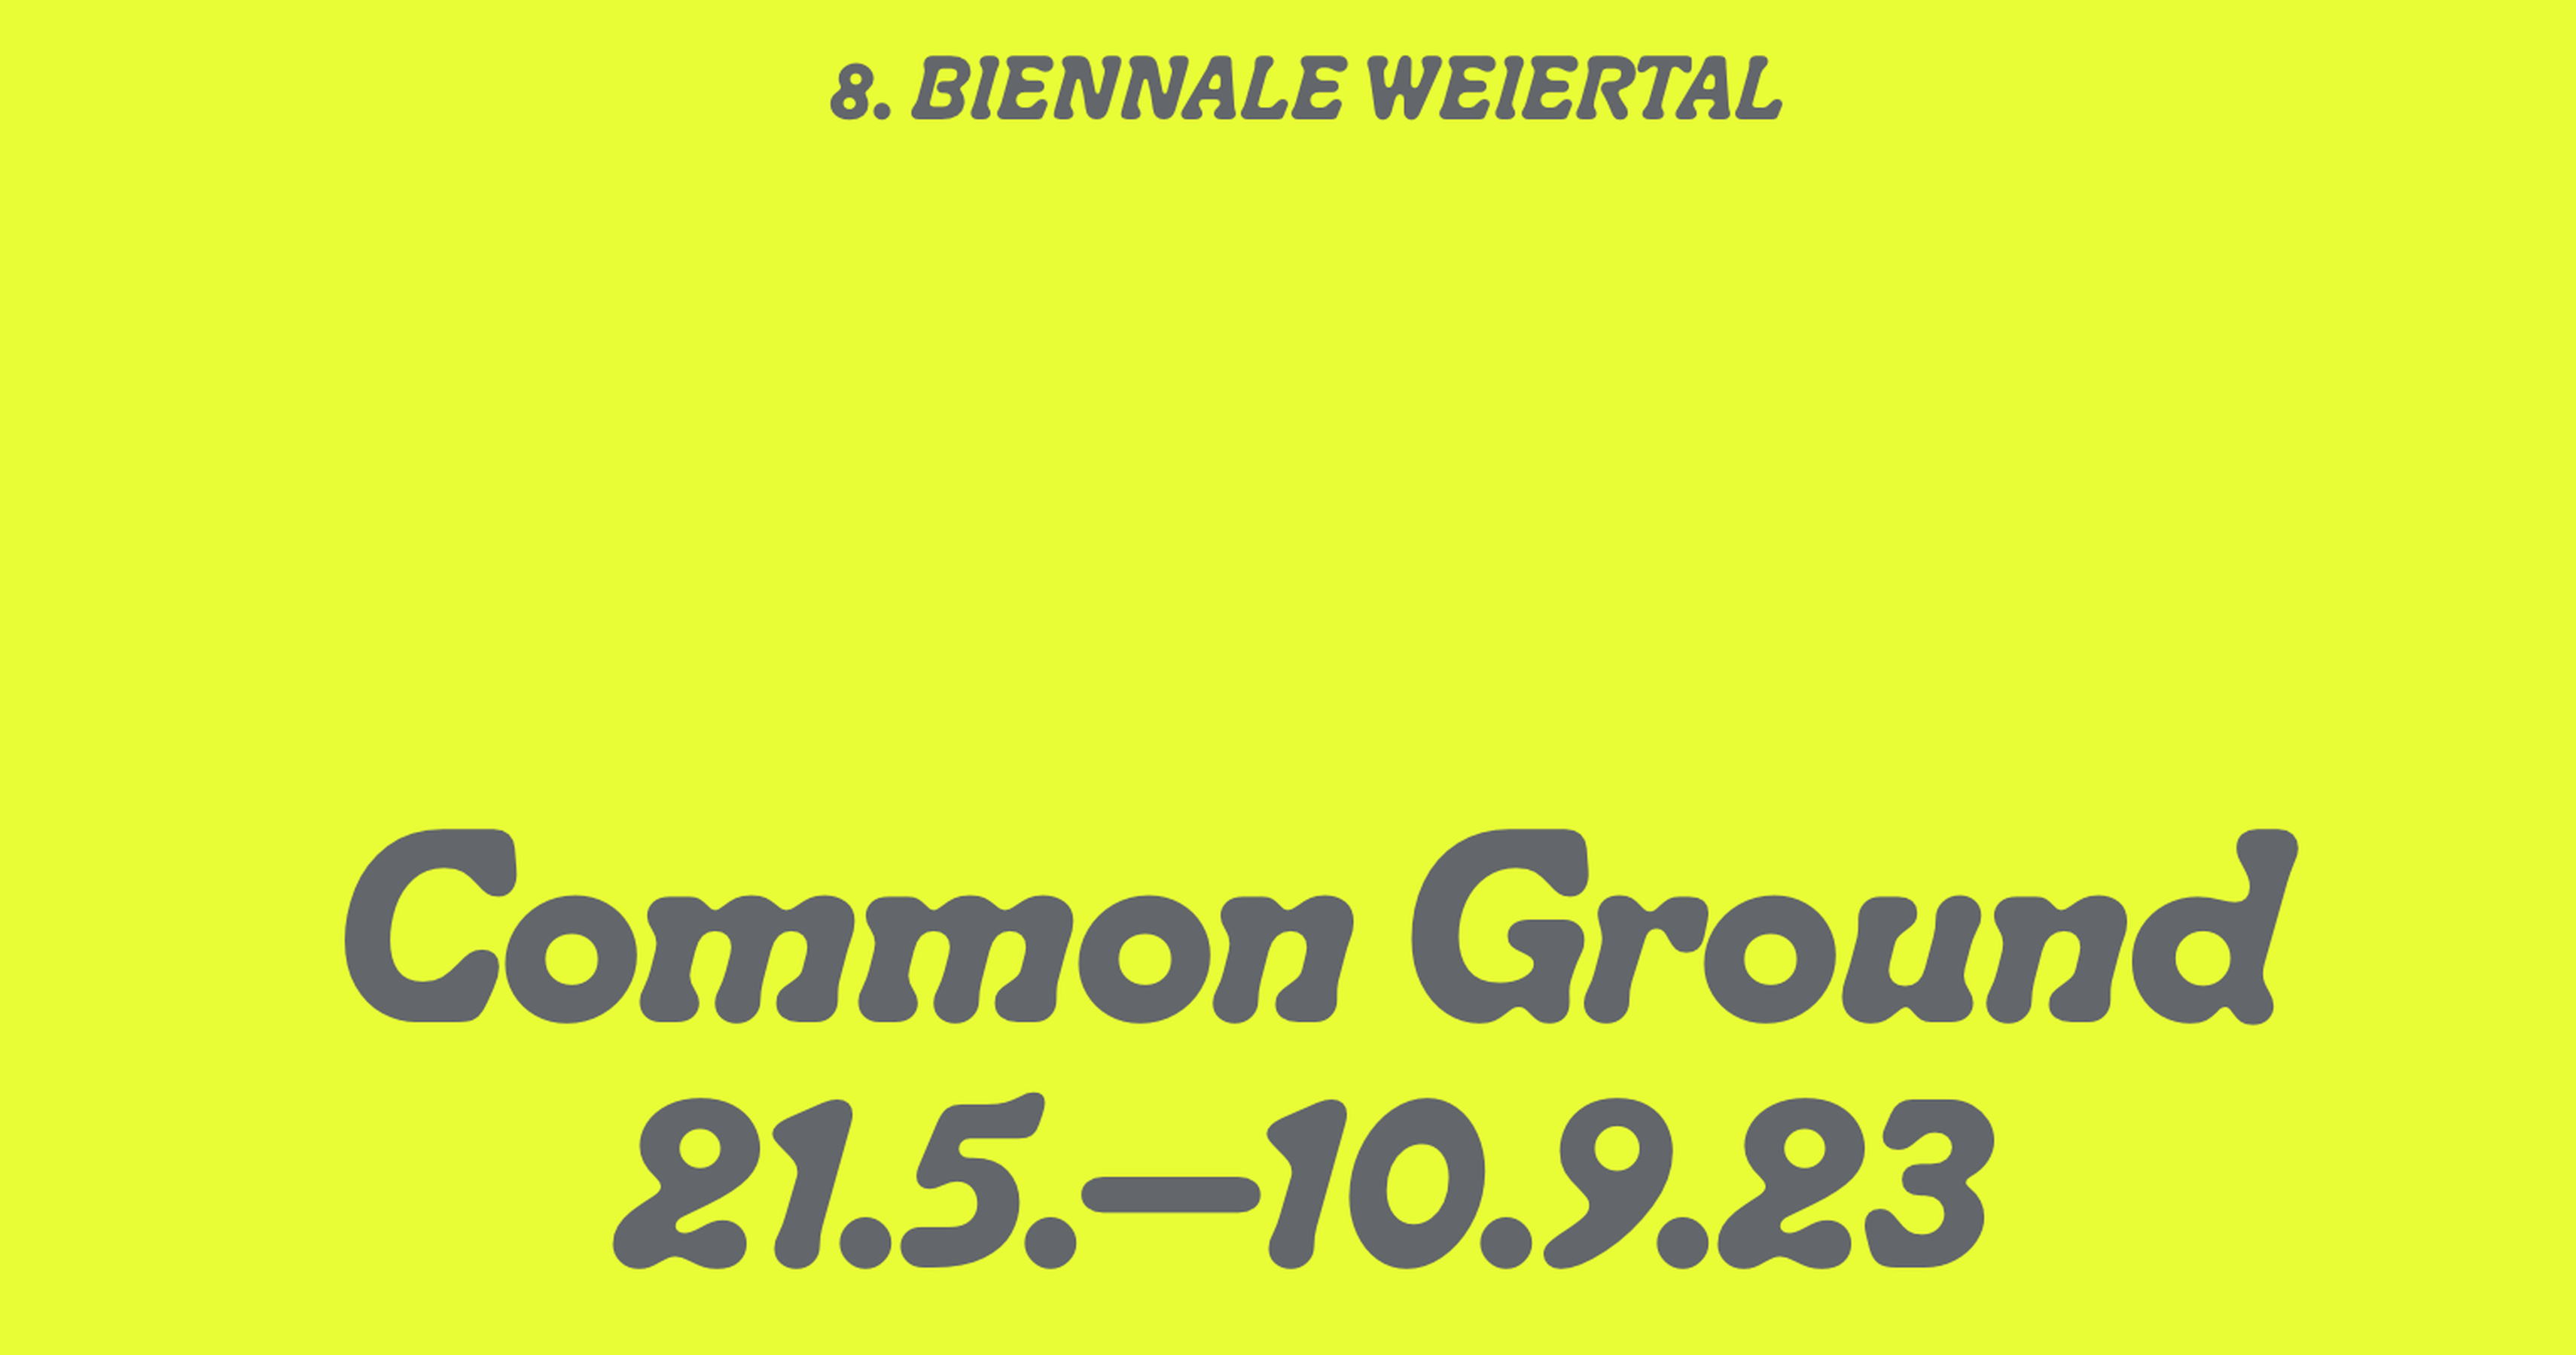 Common Ground - Weiertal Biennale